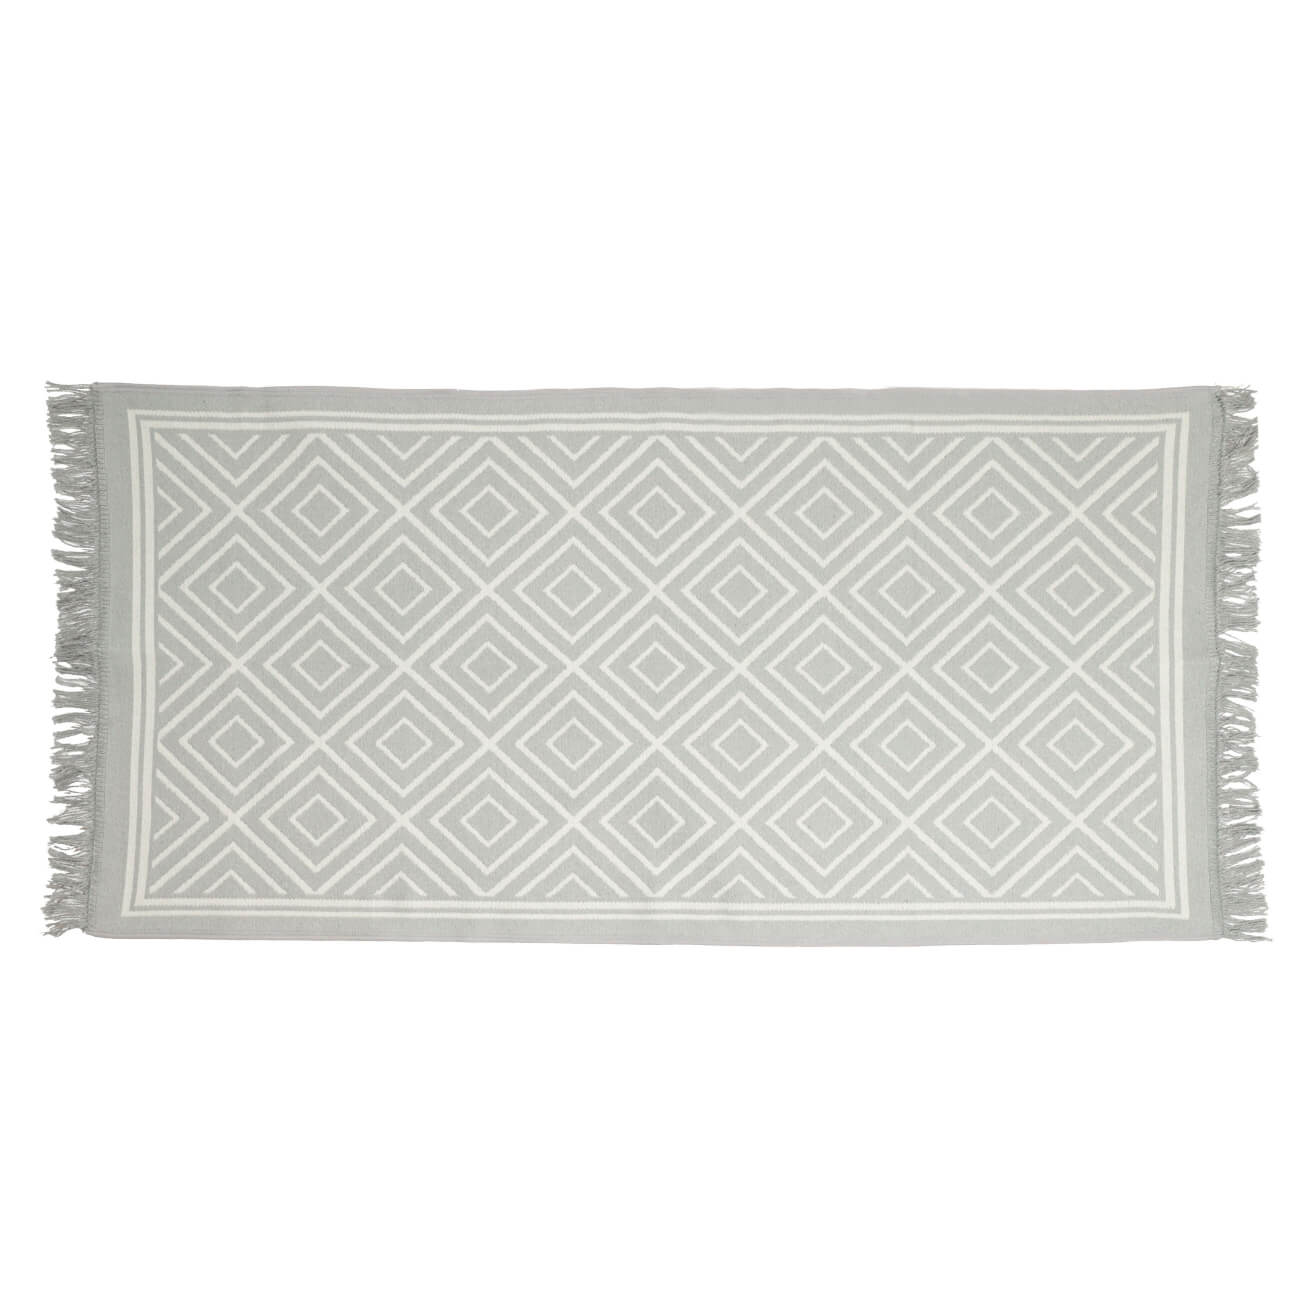 Коврик, 80х150 см, двусторонний, с бахромой, акрил, бело-серый, Узор, Carpet изображение № 1